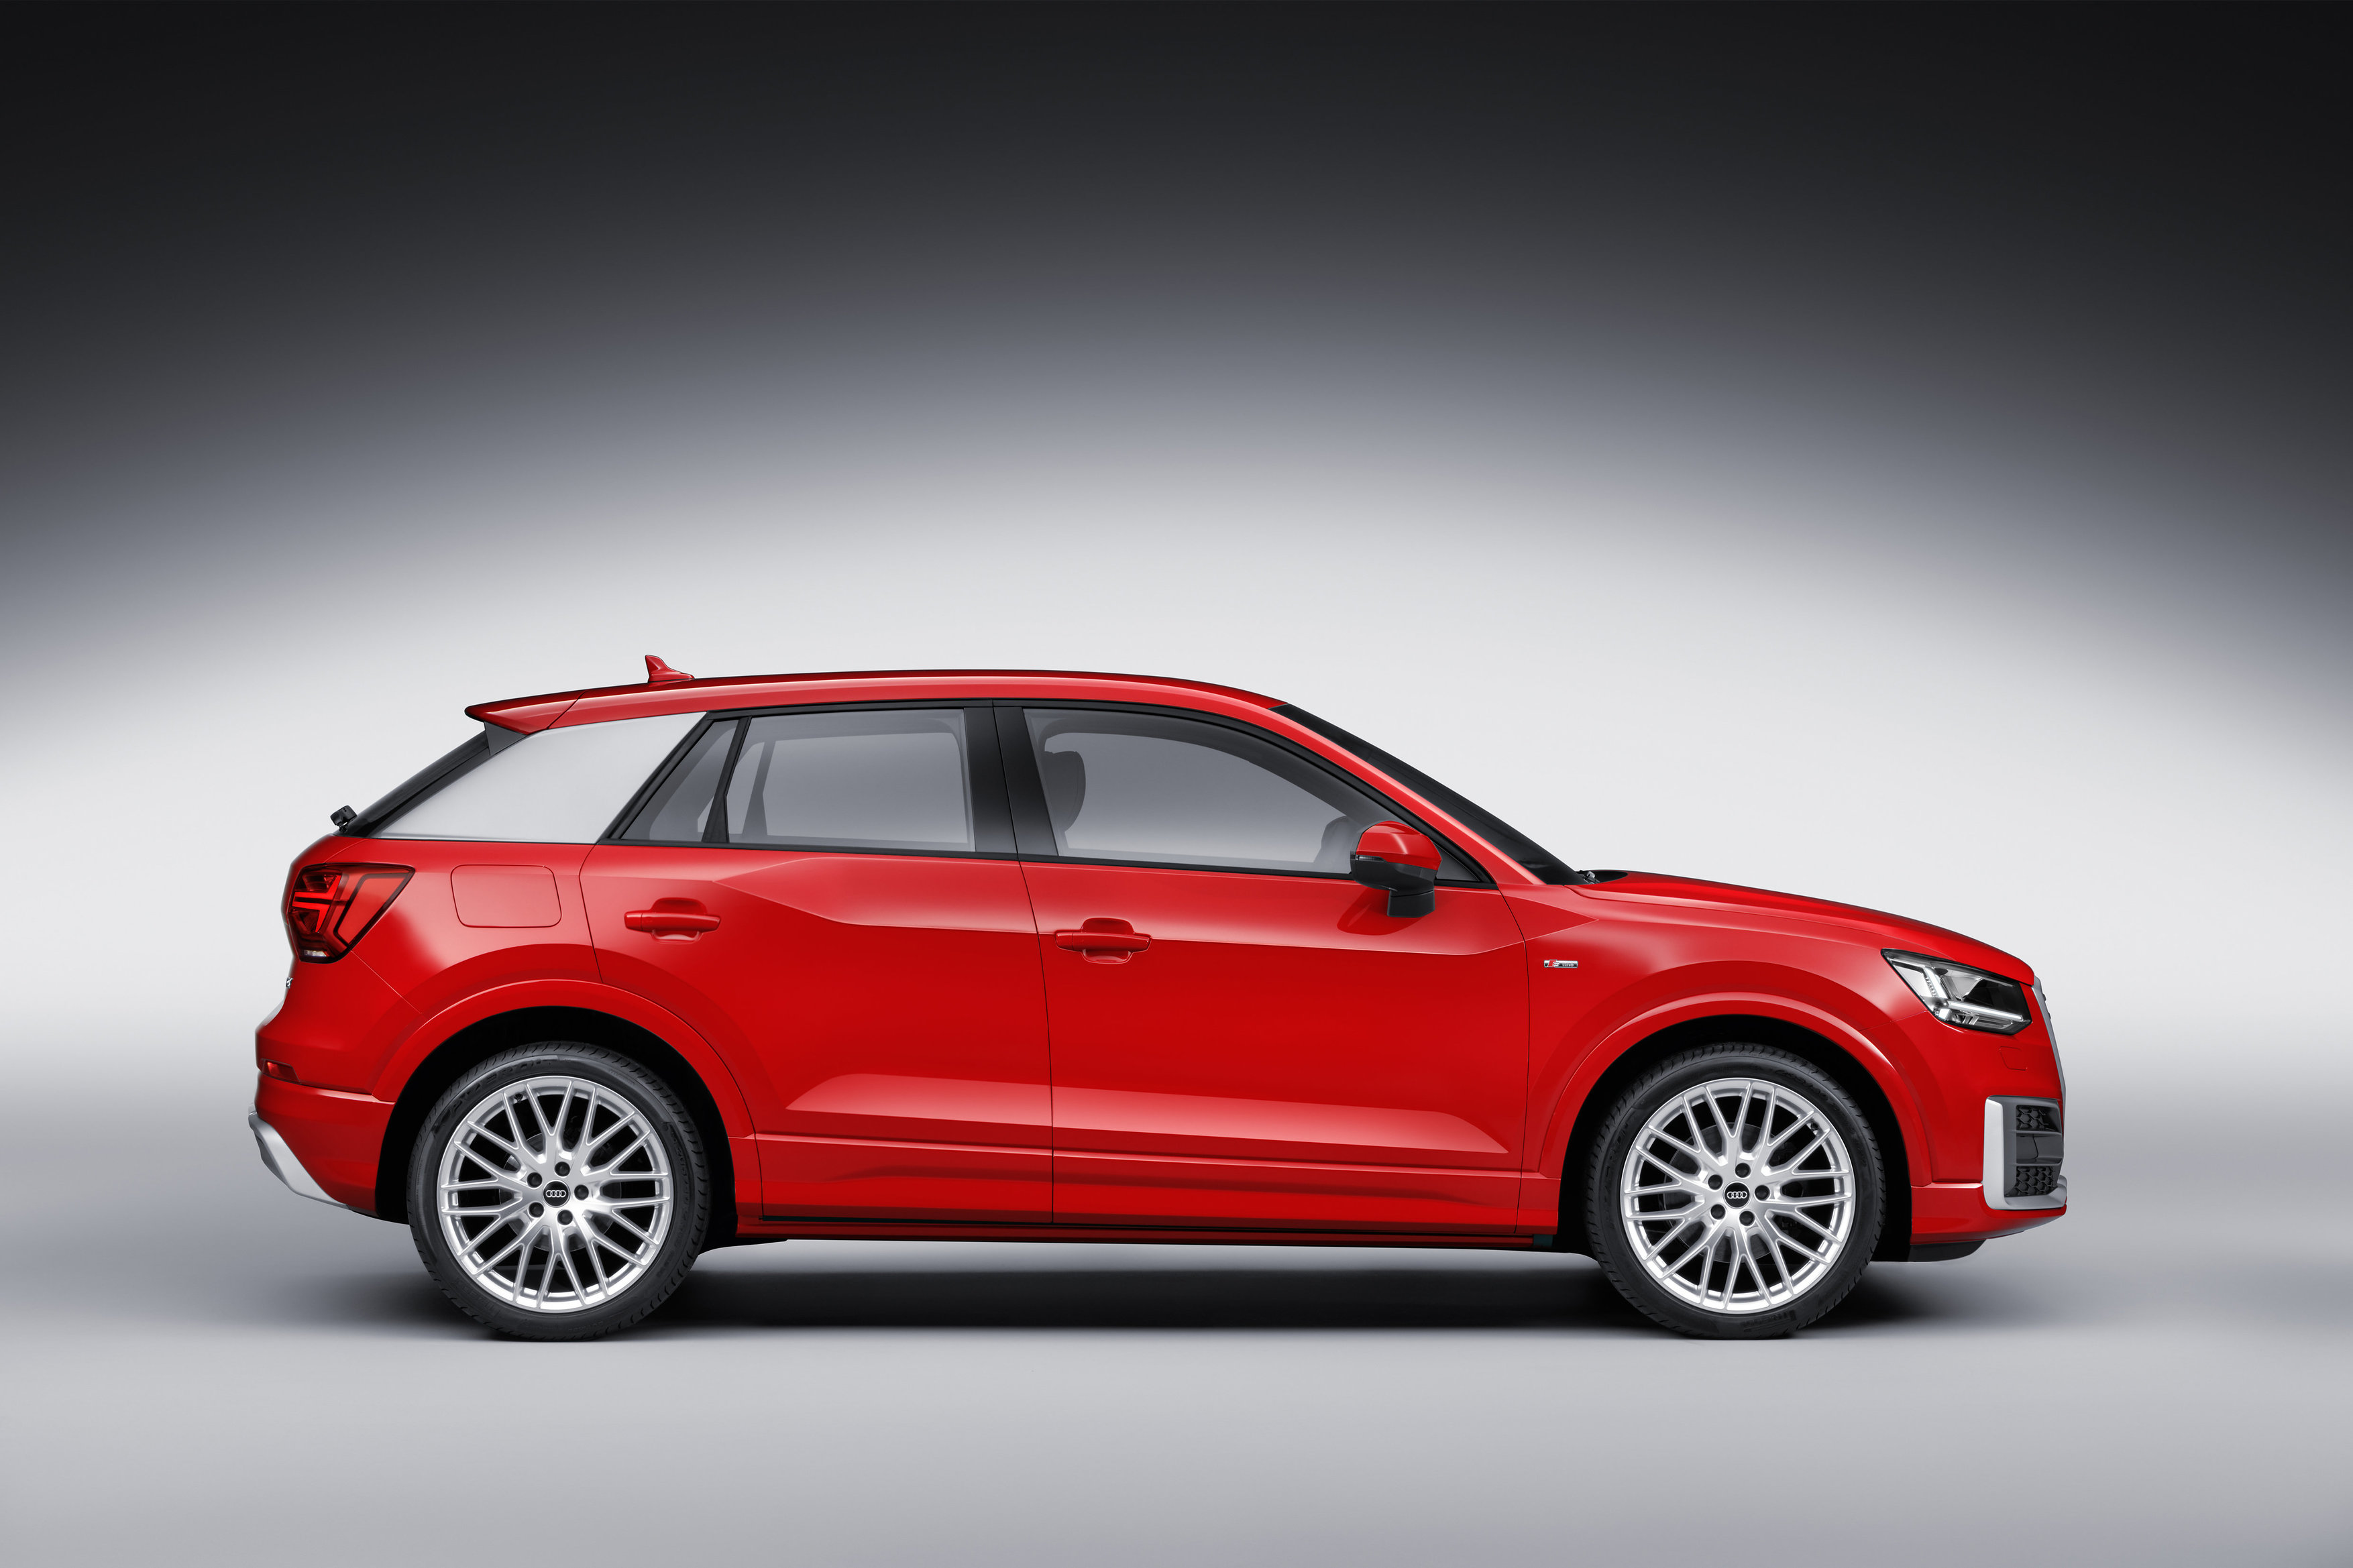 Audi Q2 exterior model